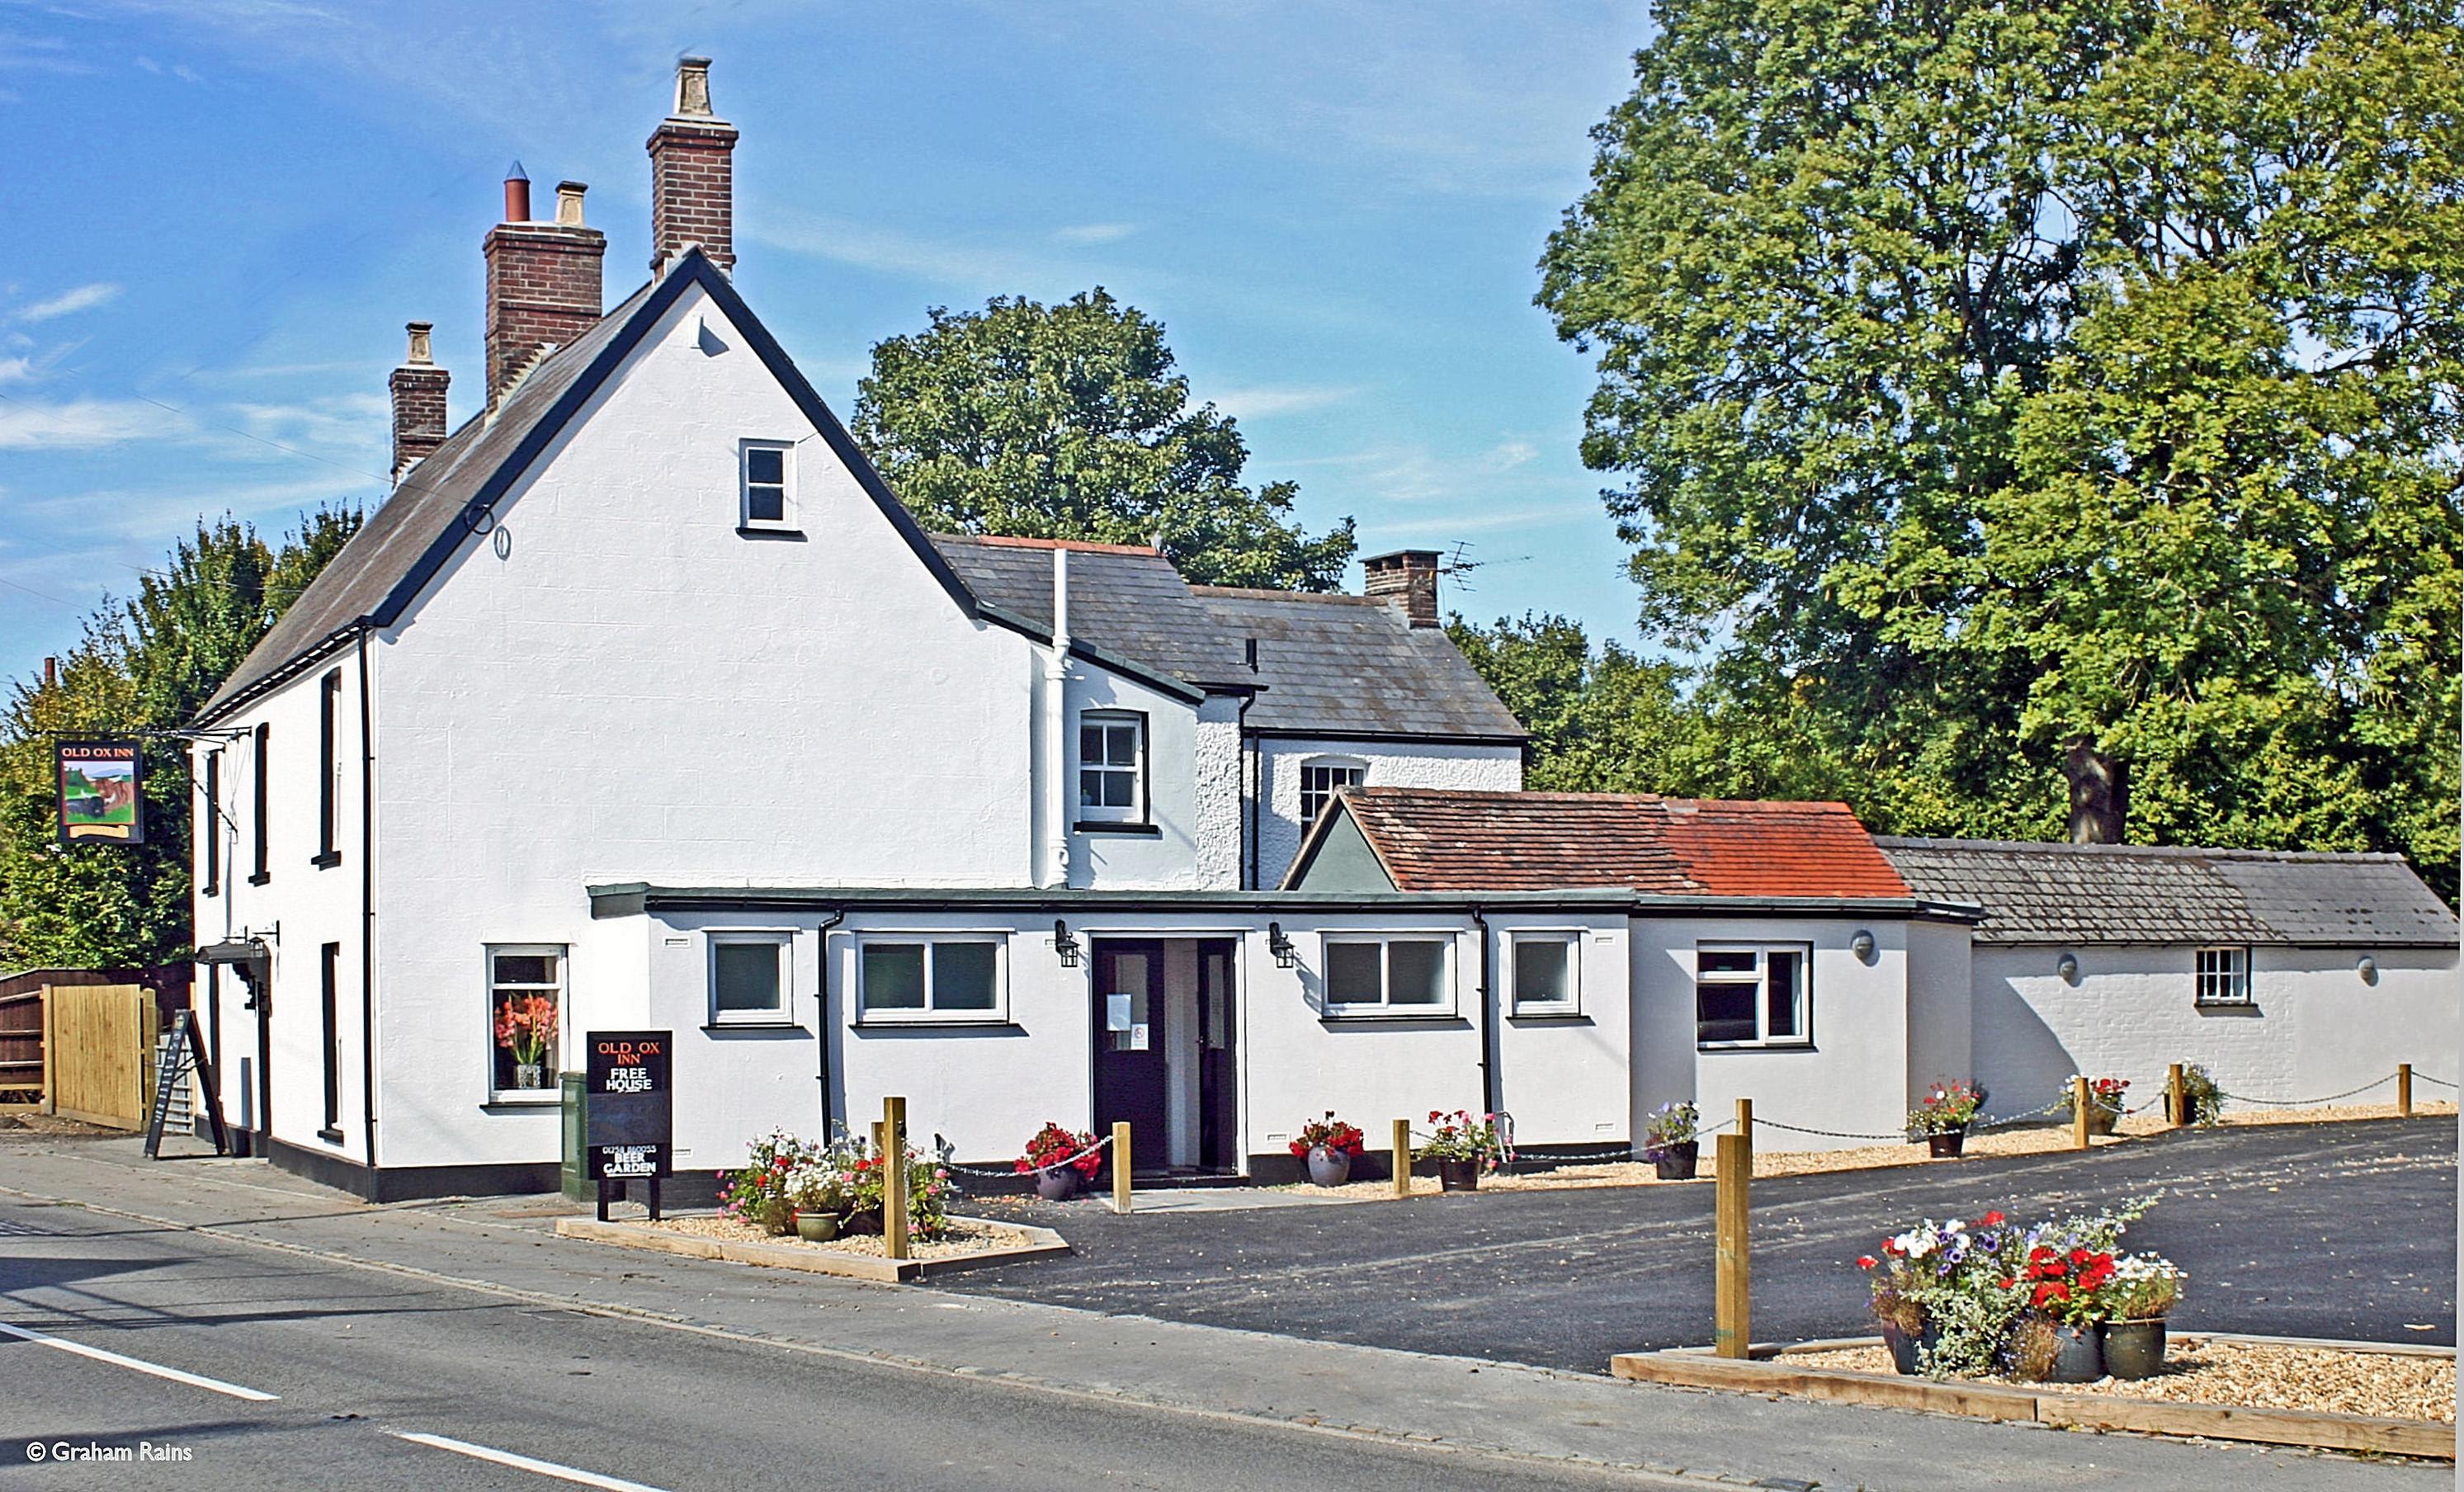 The Old Ox Inn